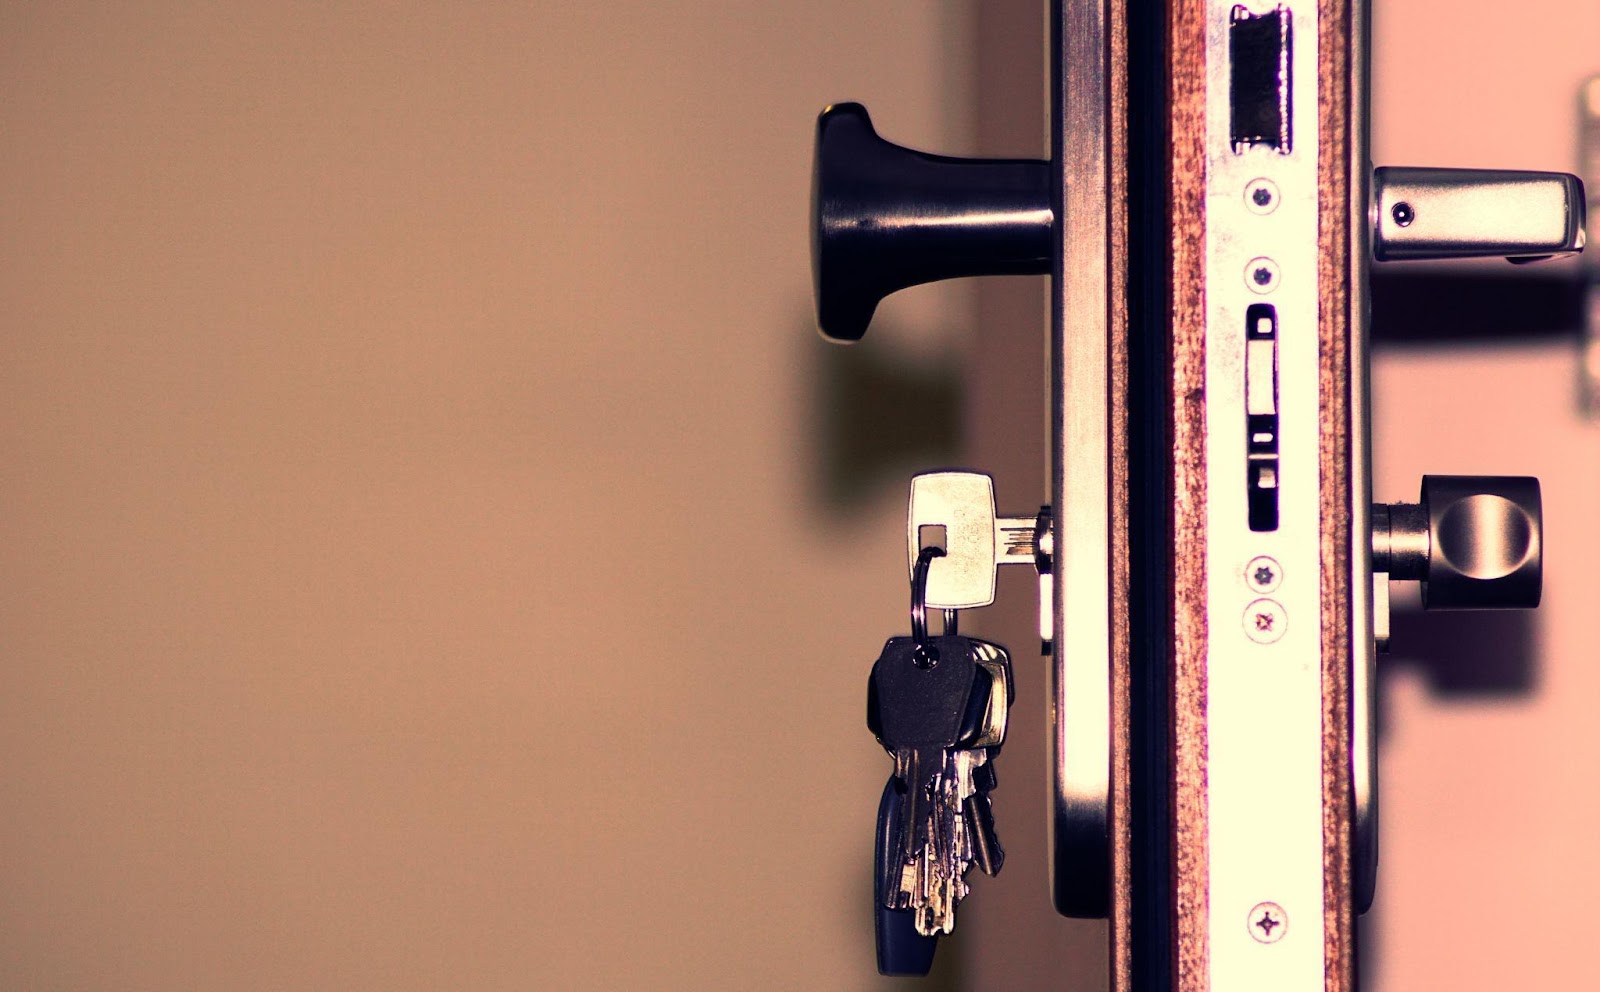 a side view of keys in a lock